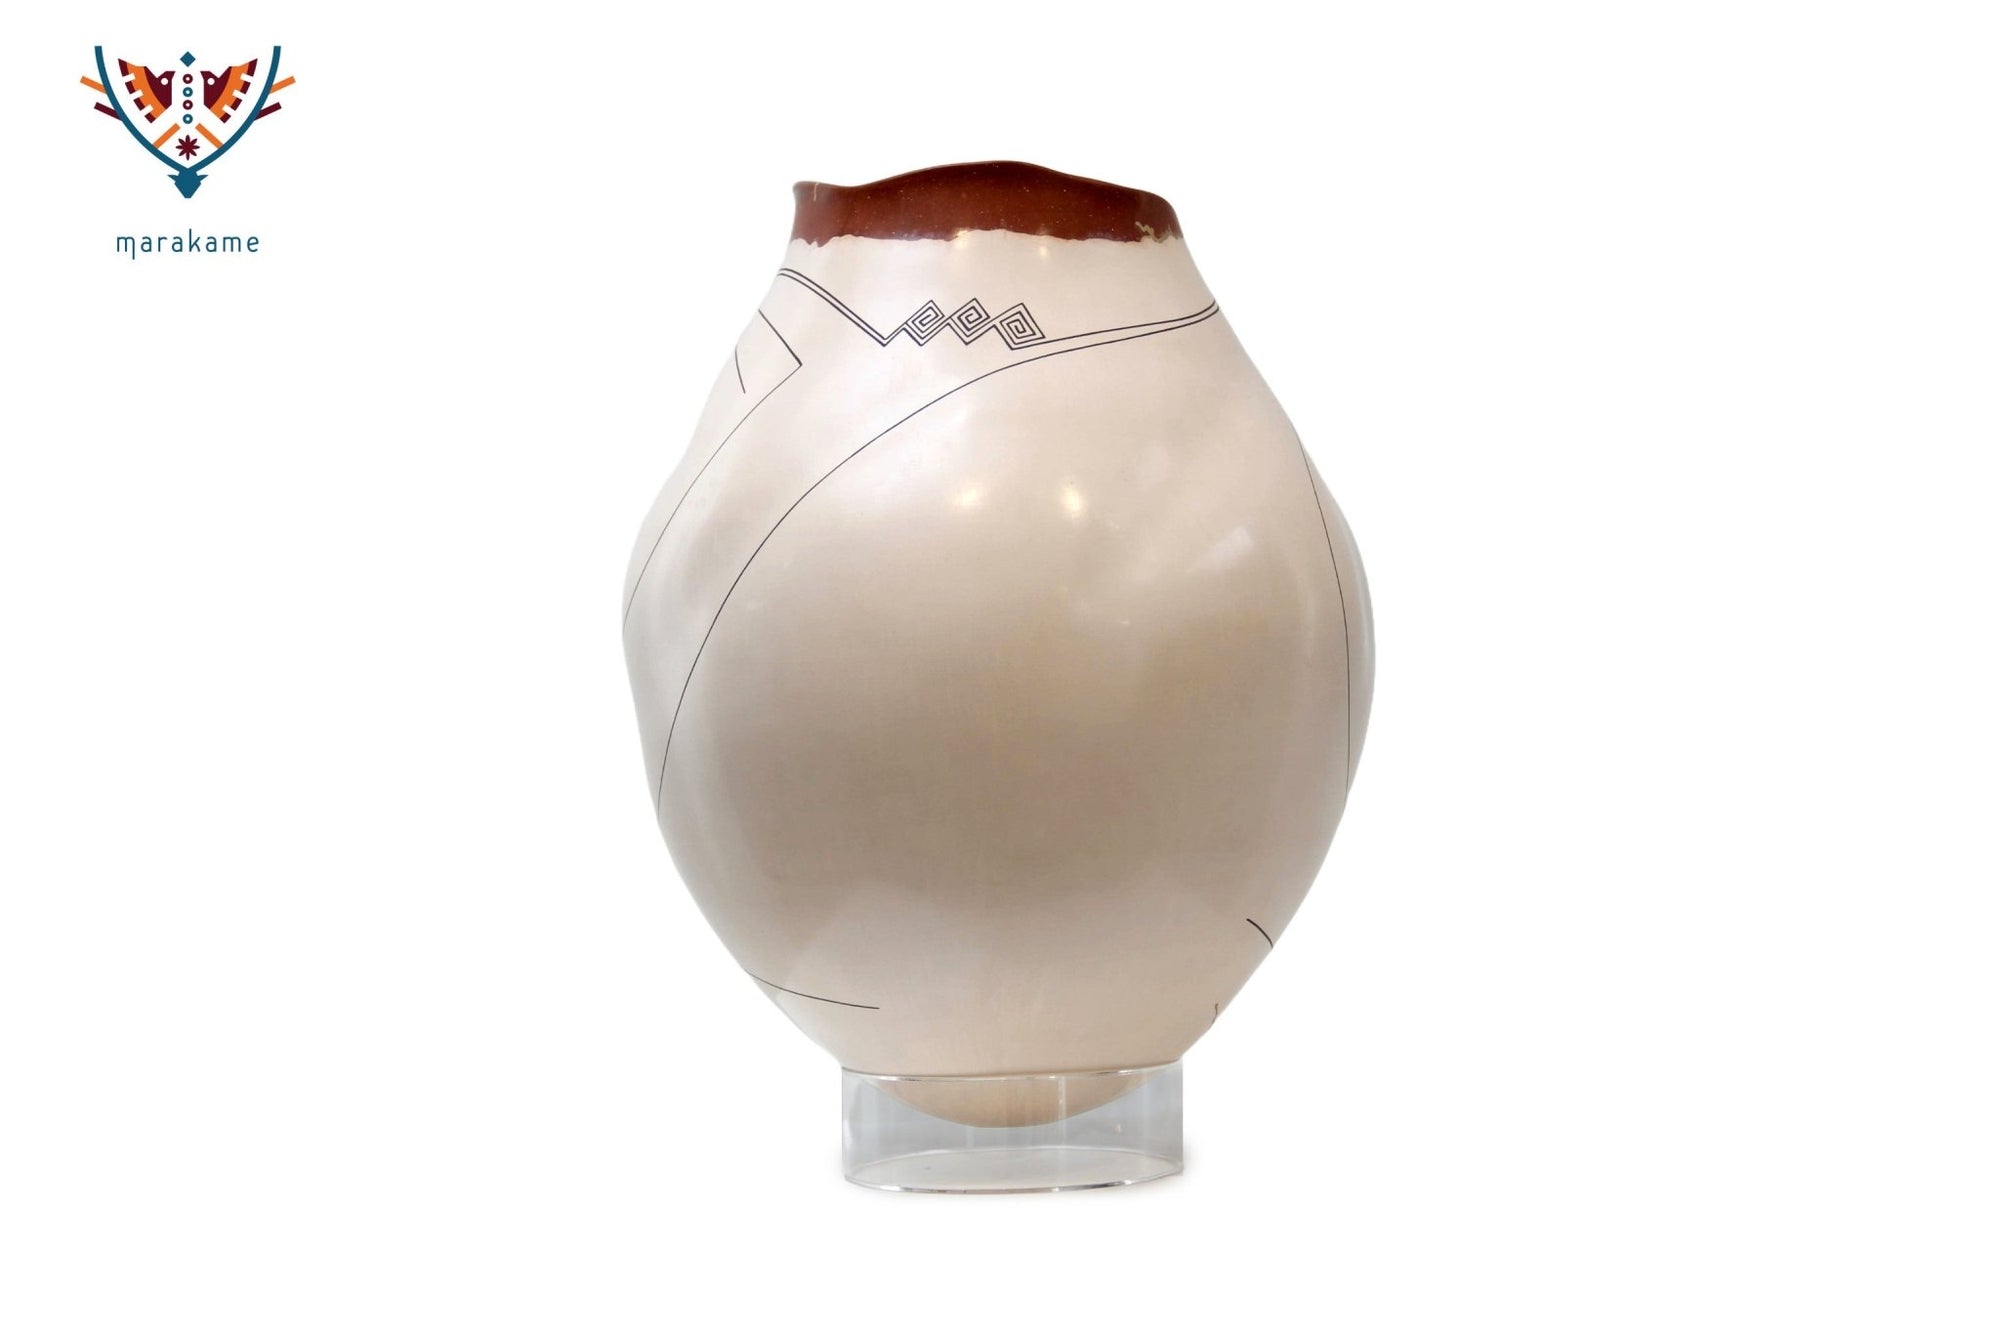 Mata Ortiz Keramik – Narben – Huichol-Kunst – Marakame